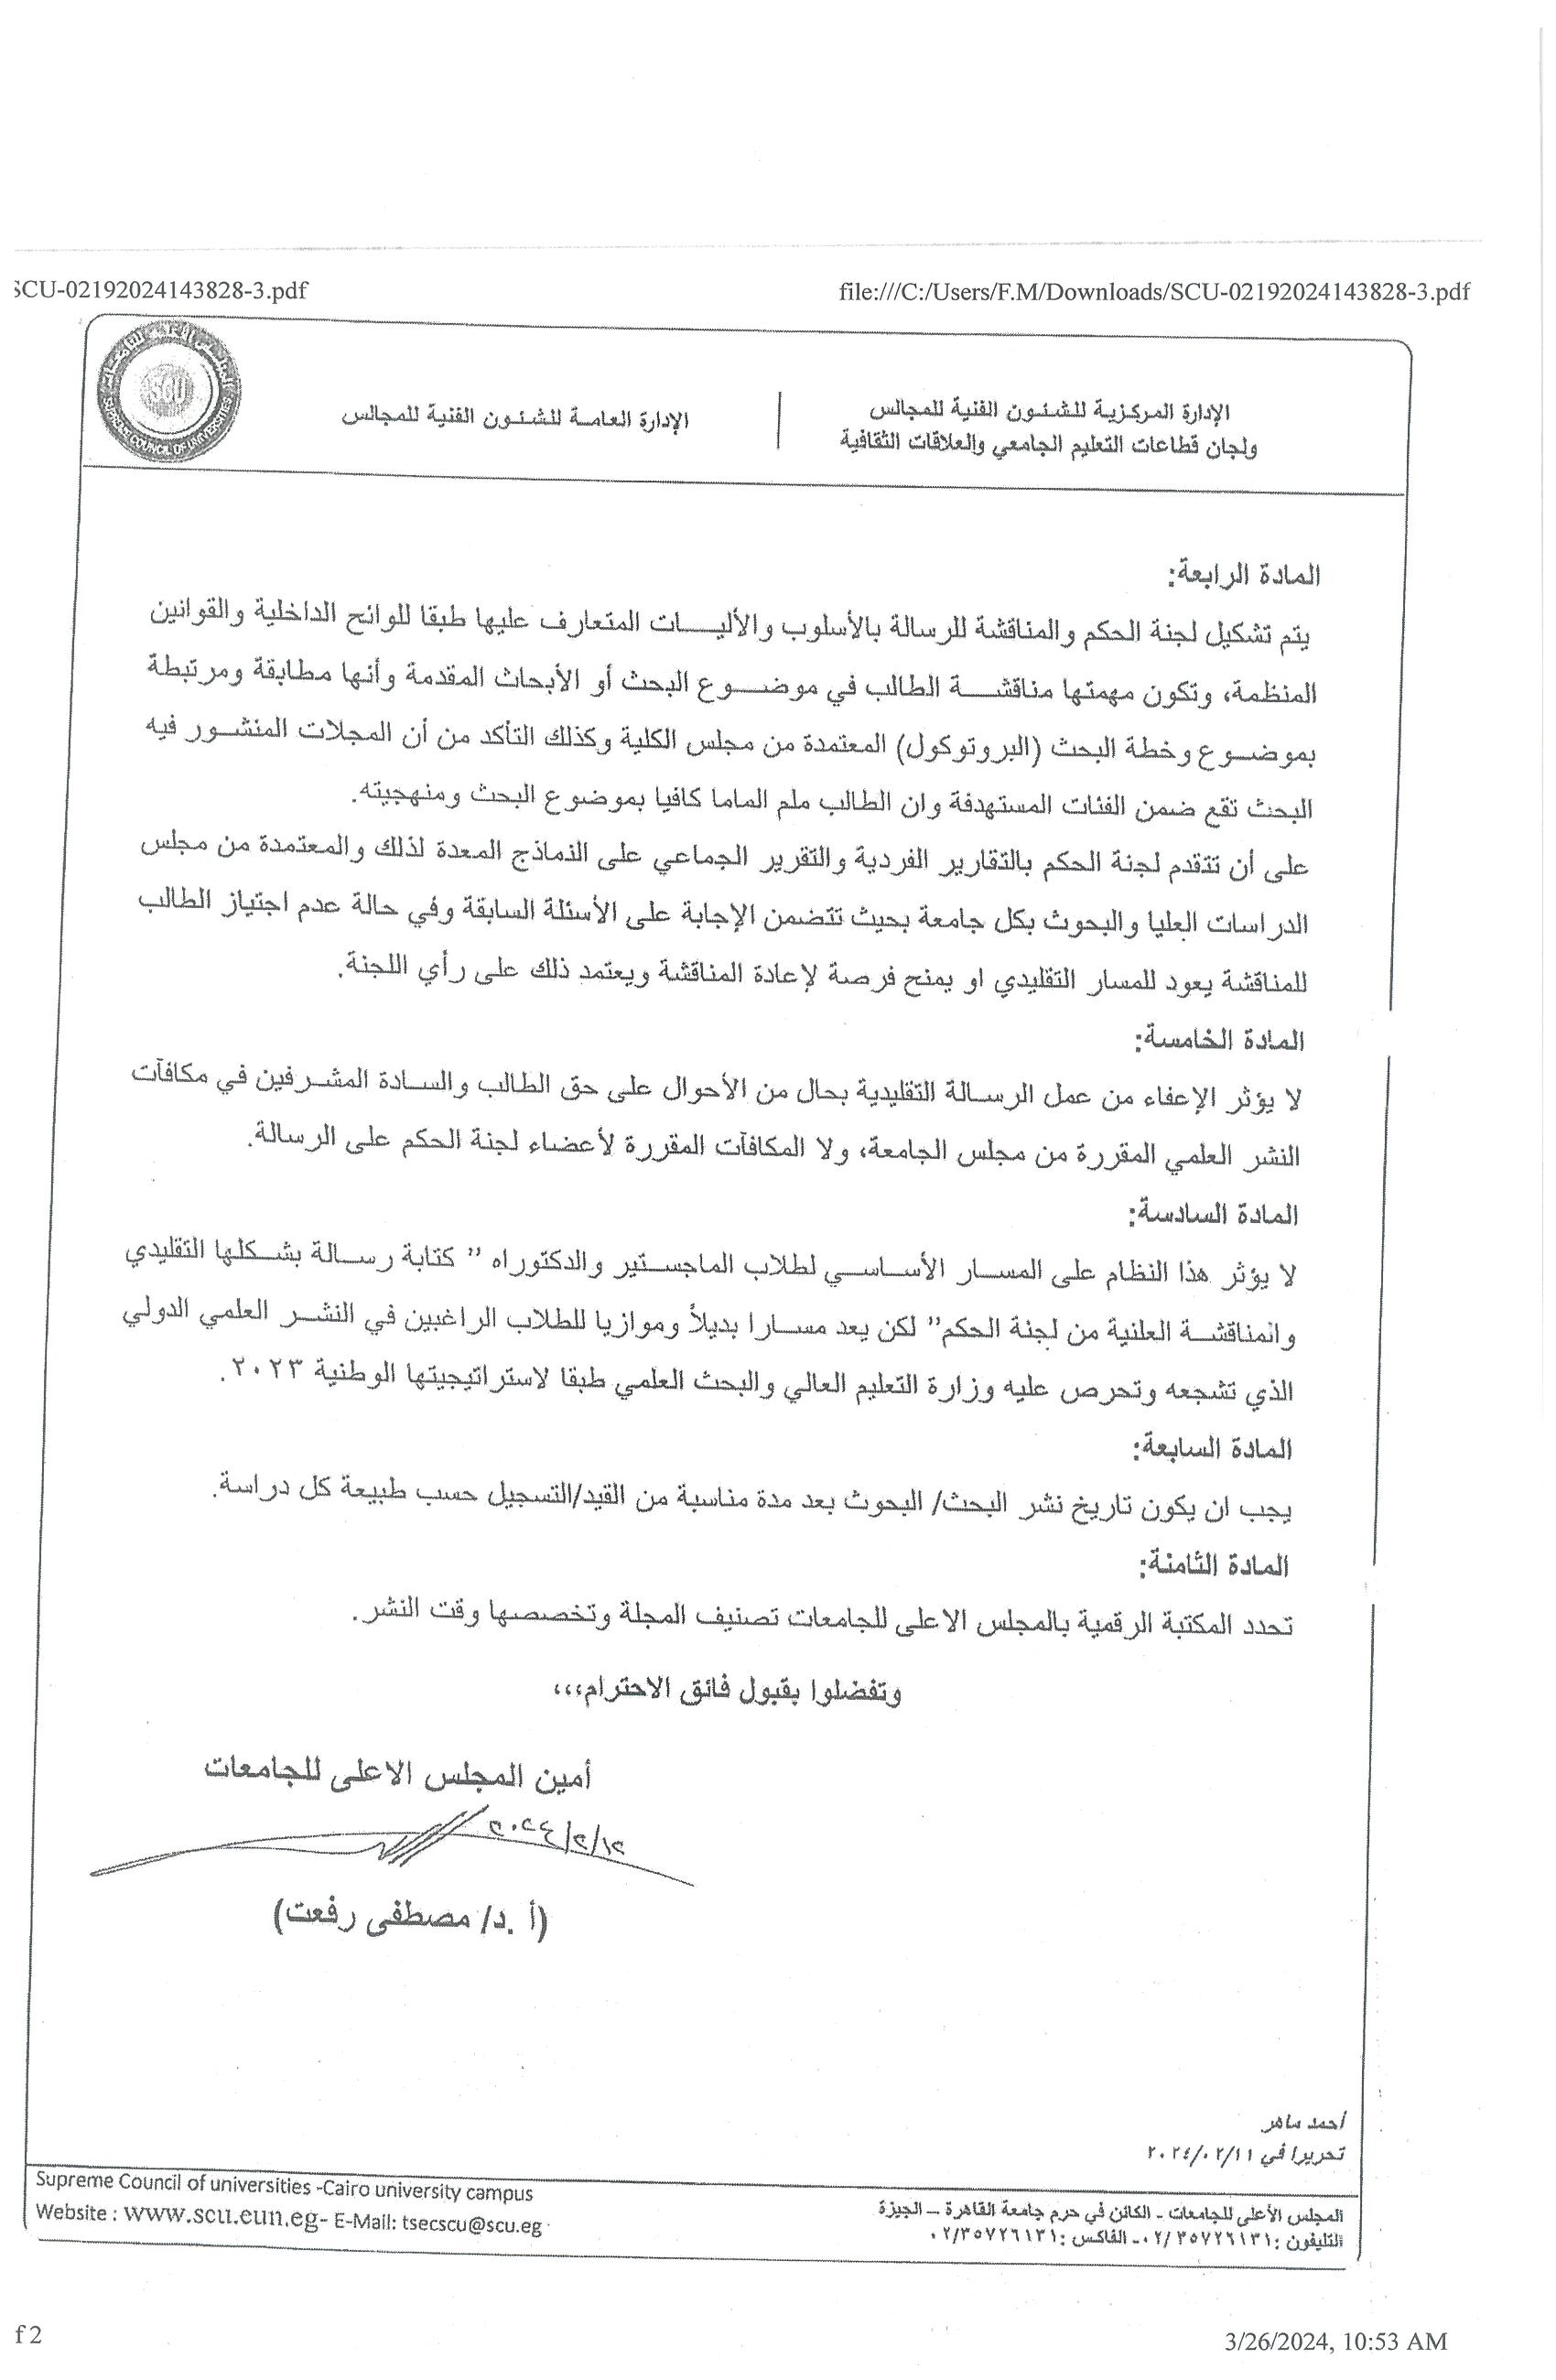 موافقه المجلس الاعلى للجامعات على مقترح لتشجيع النشر العلمى بالجامعات المصريه 